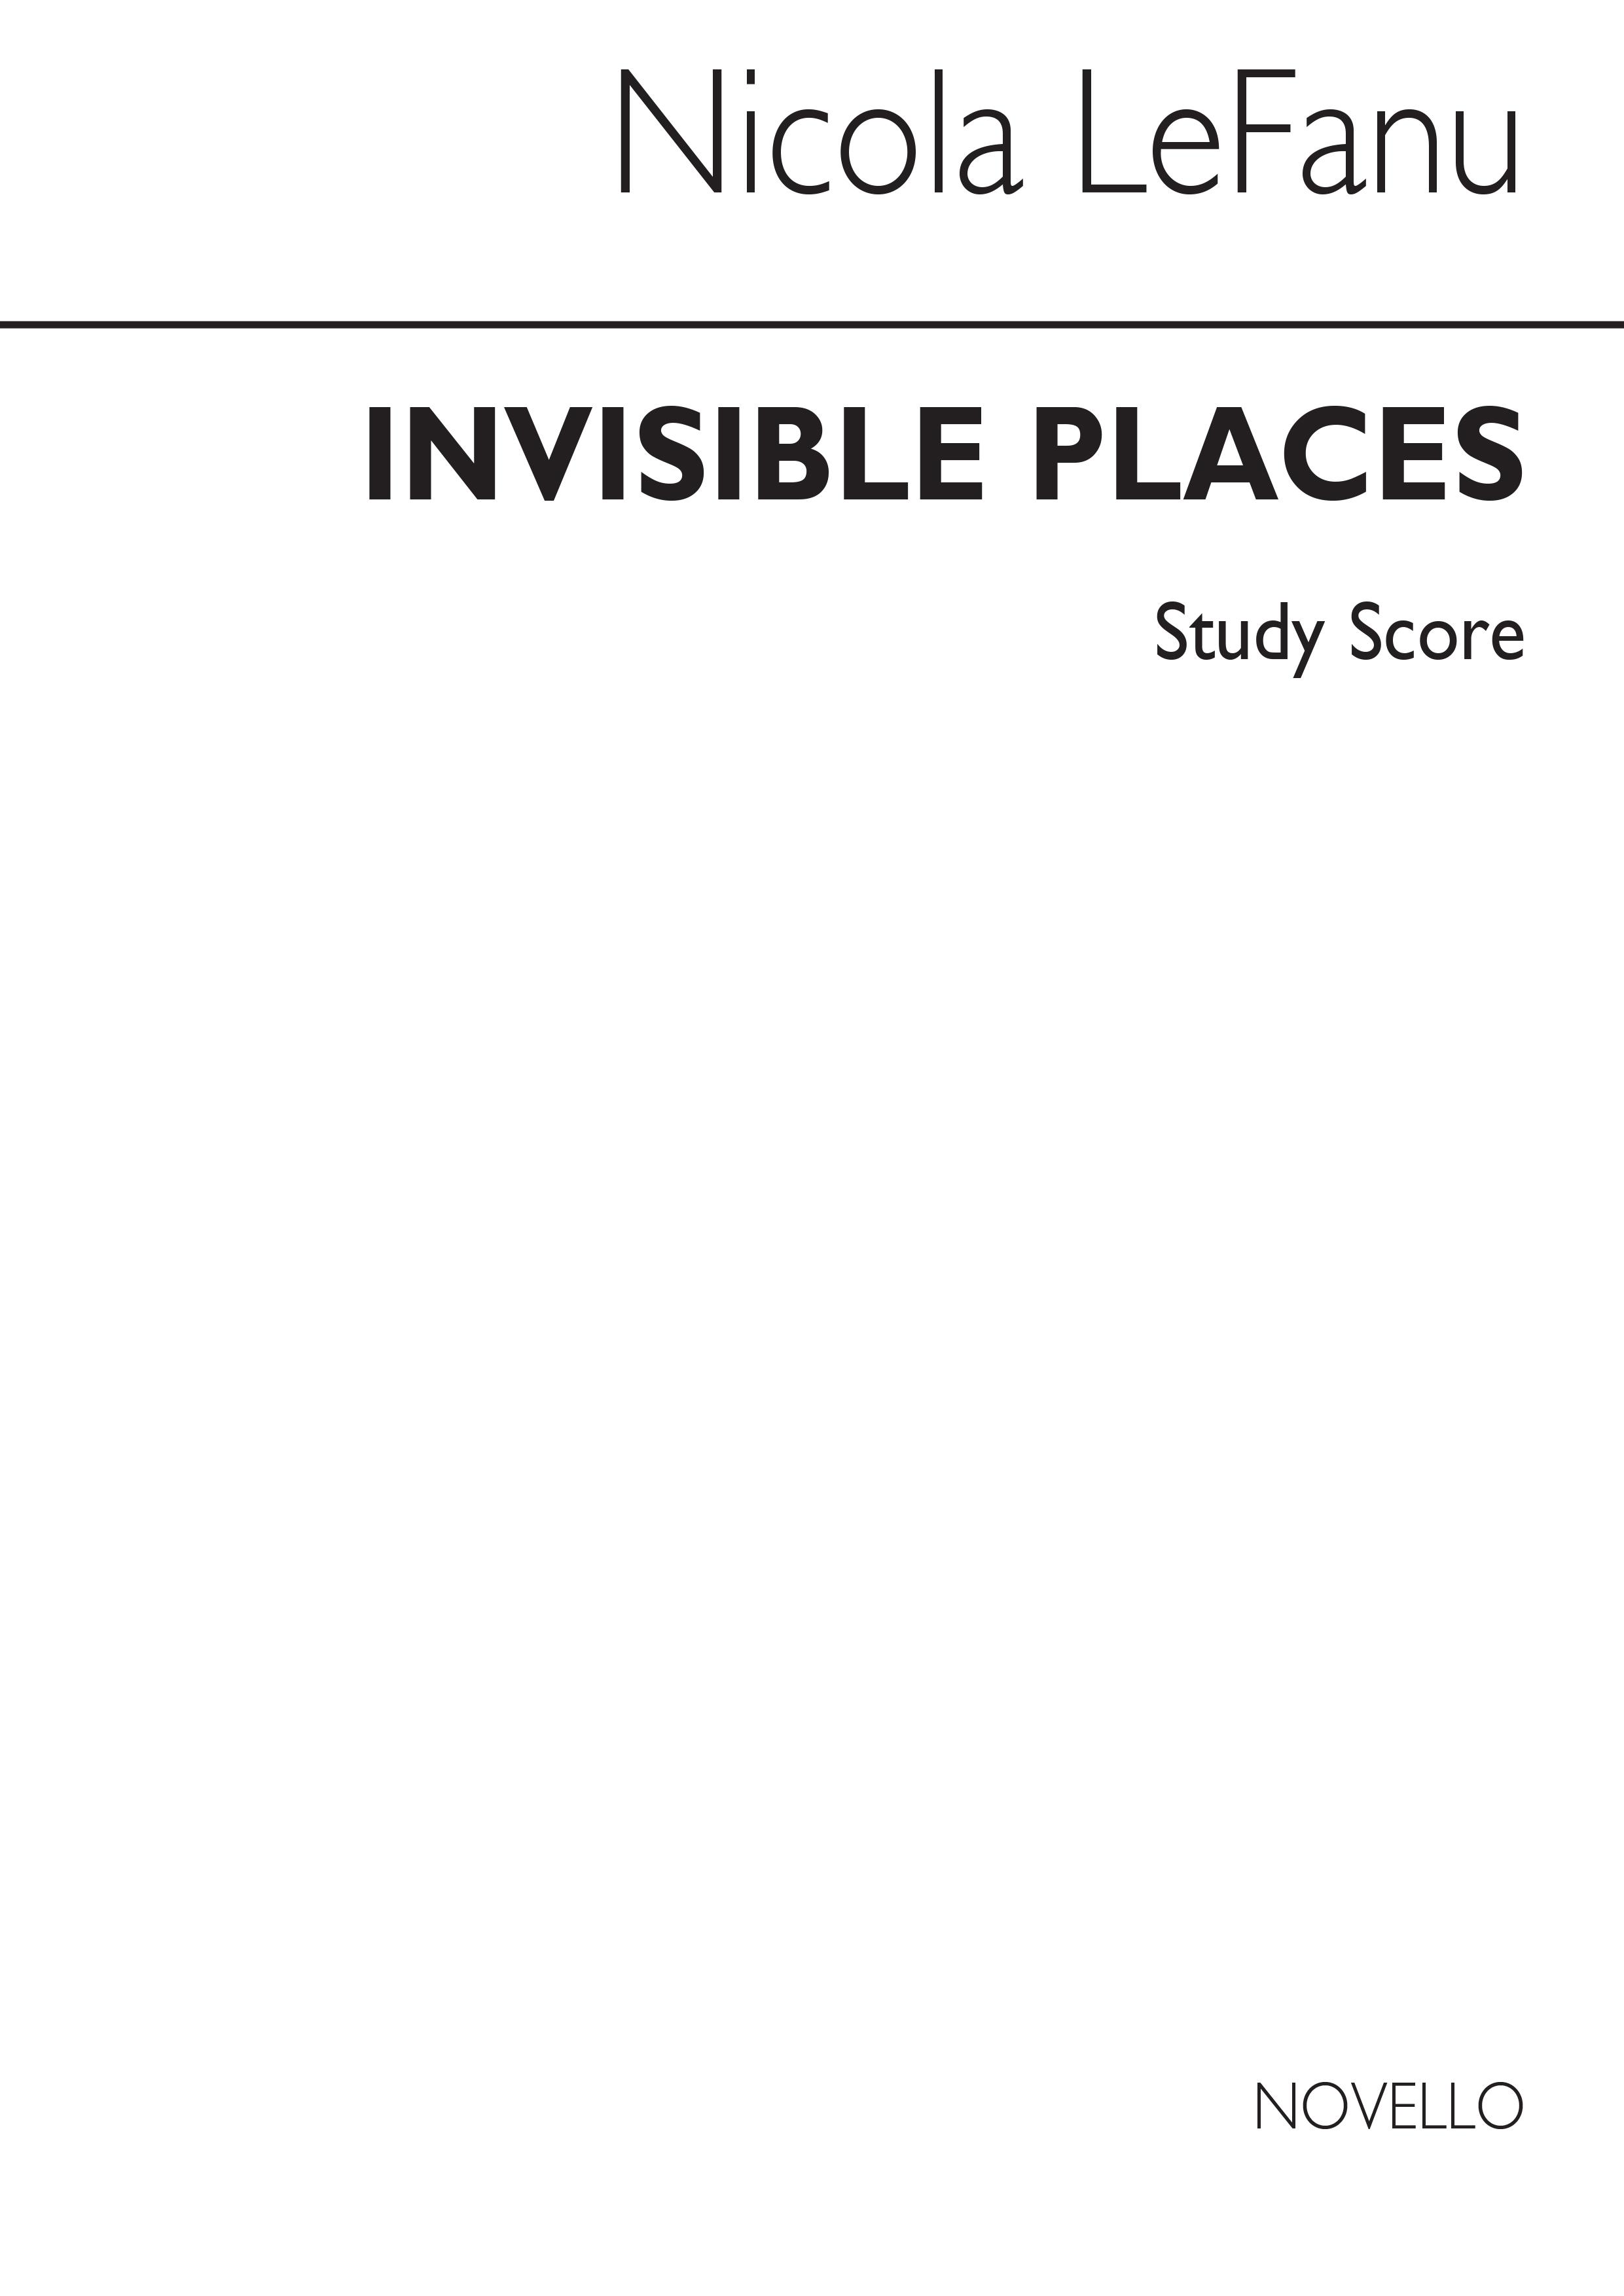 Nicola Lefanu: Invisible Places